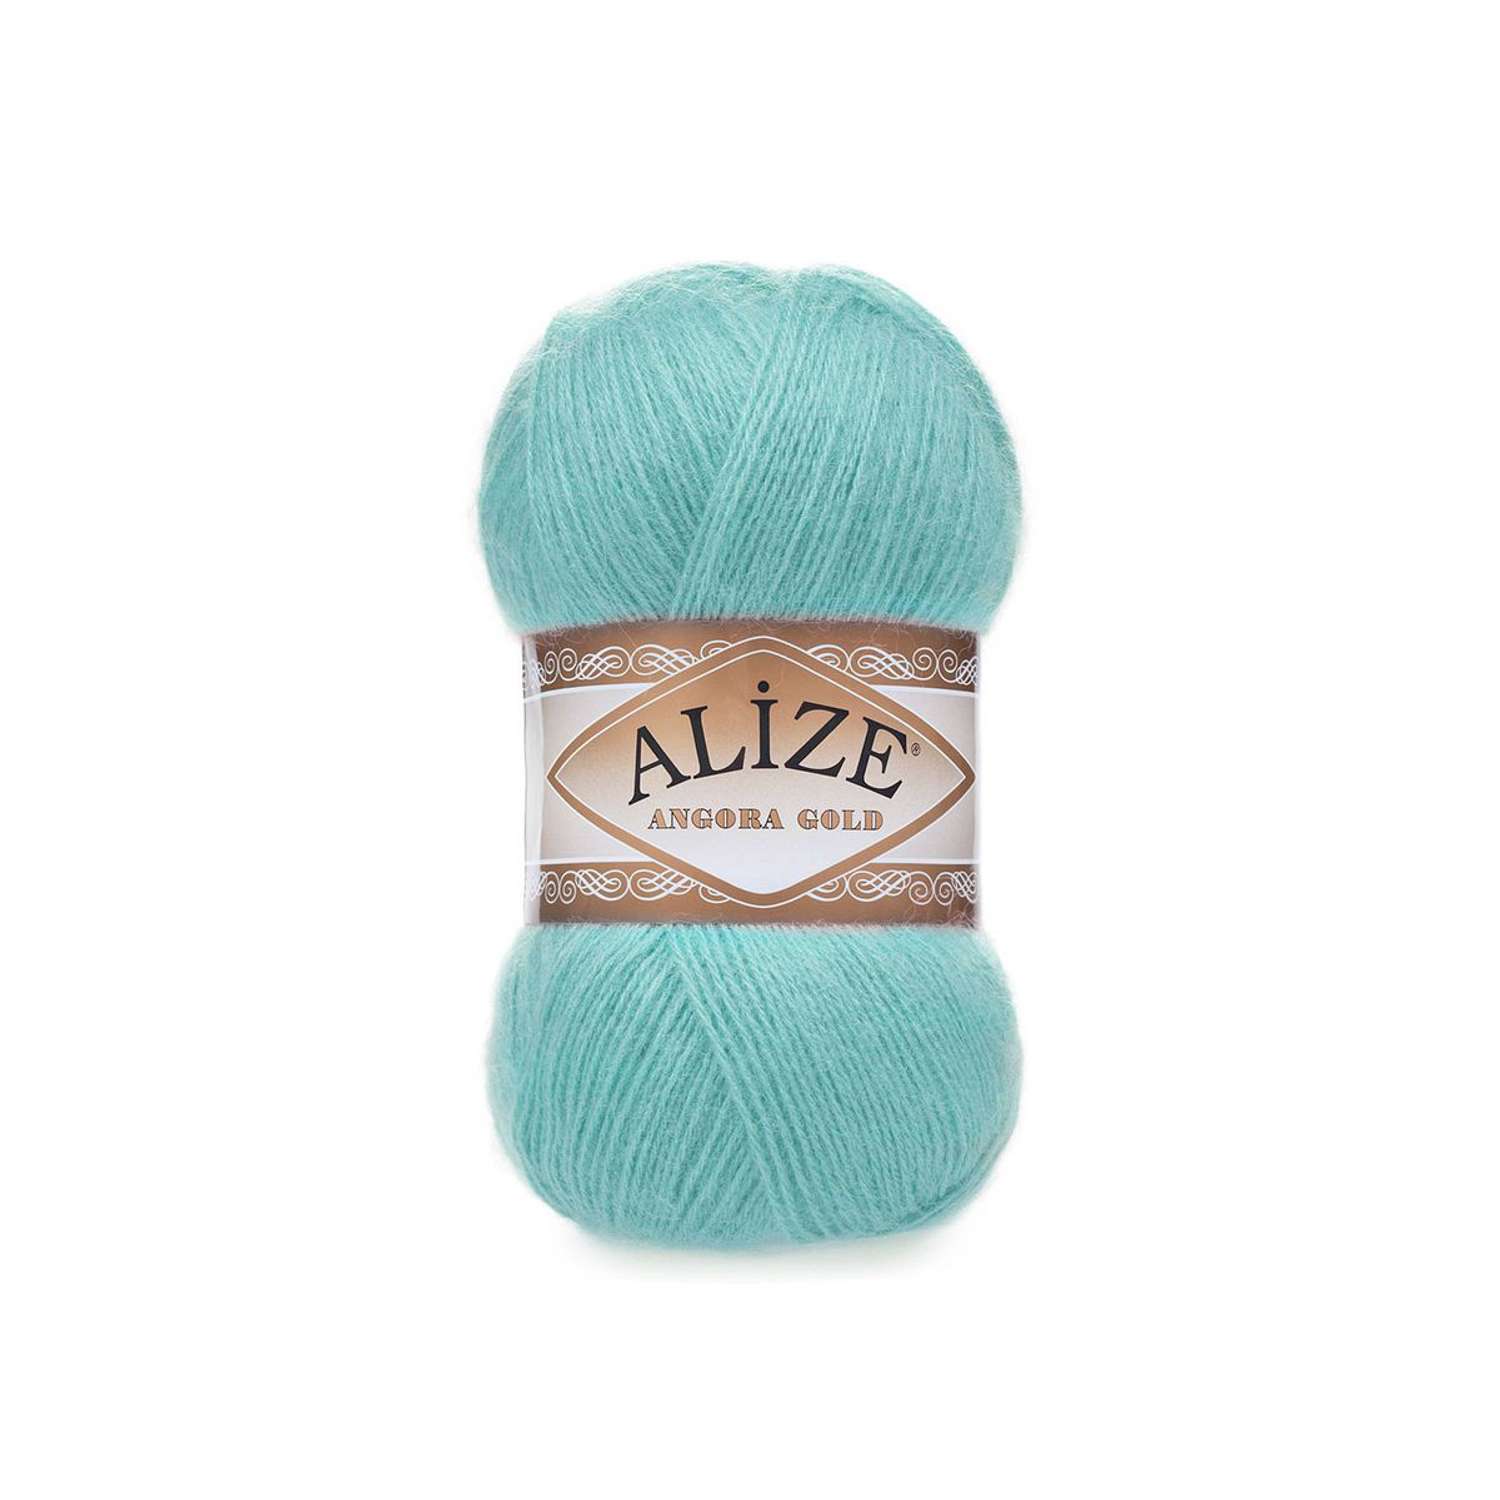 Пряжа Alize мягкая теплая для шарфов кардиганов Angora Gold 100 гр 550 м 5 мотков 462 морская зелень - фото 6